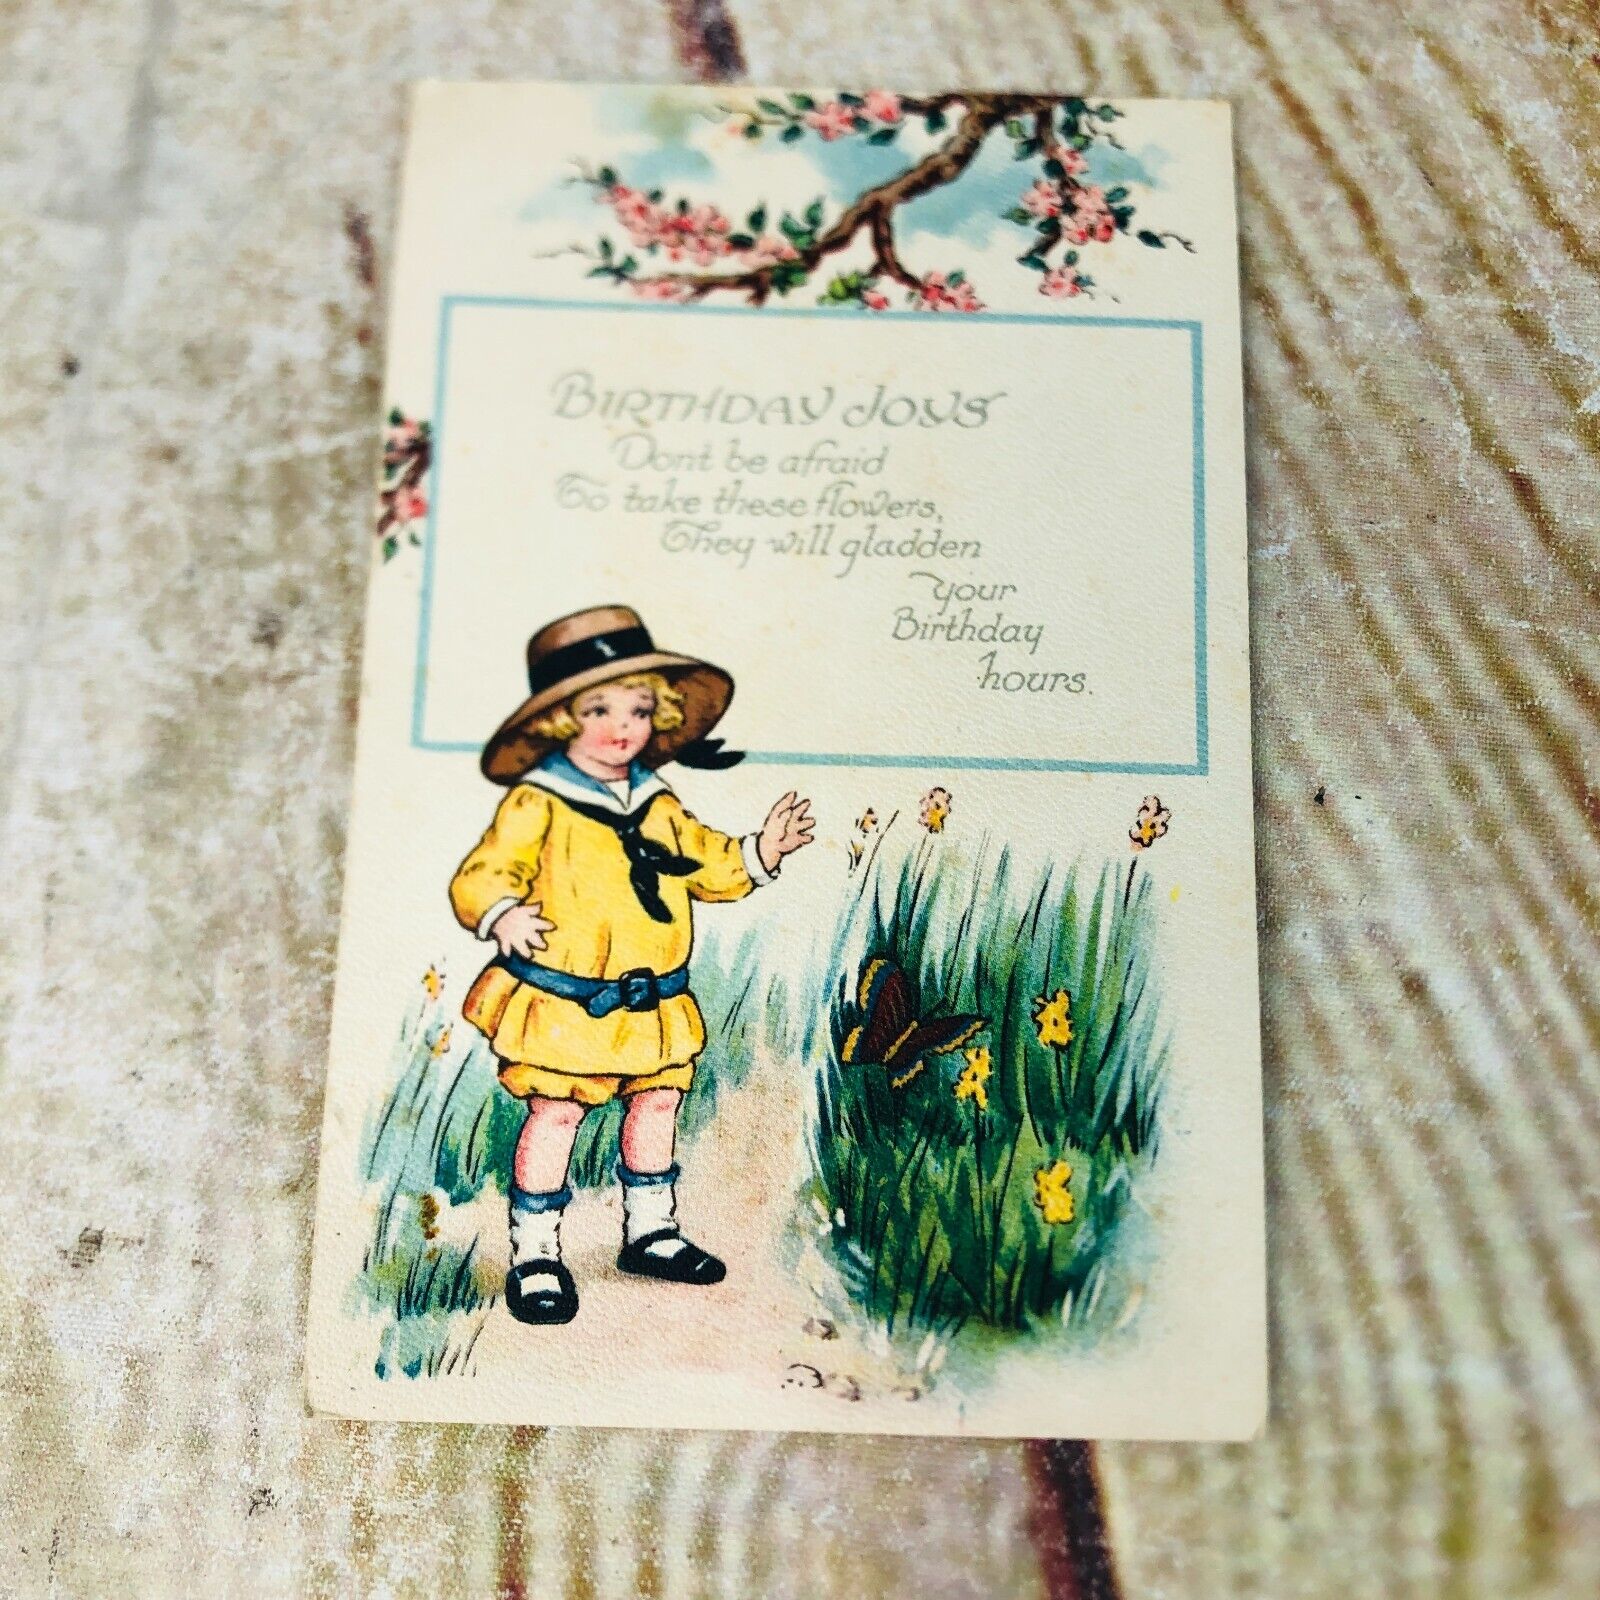 vtg birthday joys post card little girl butterflies cherry blossoms used